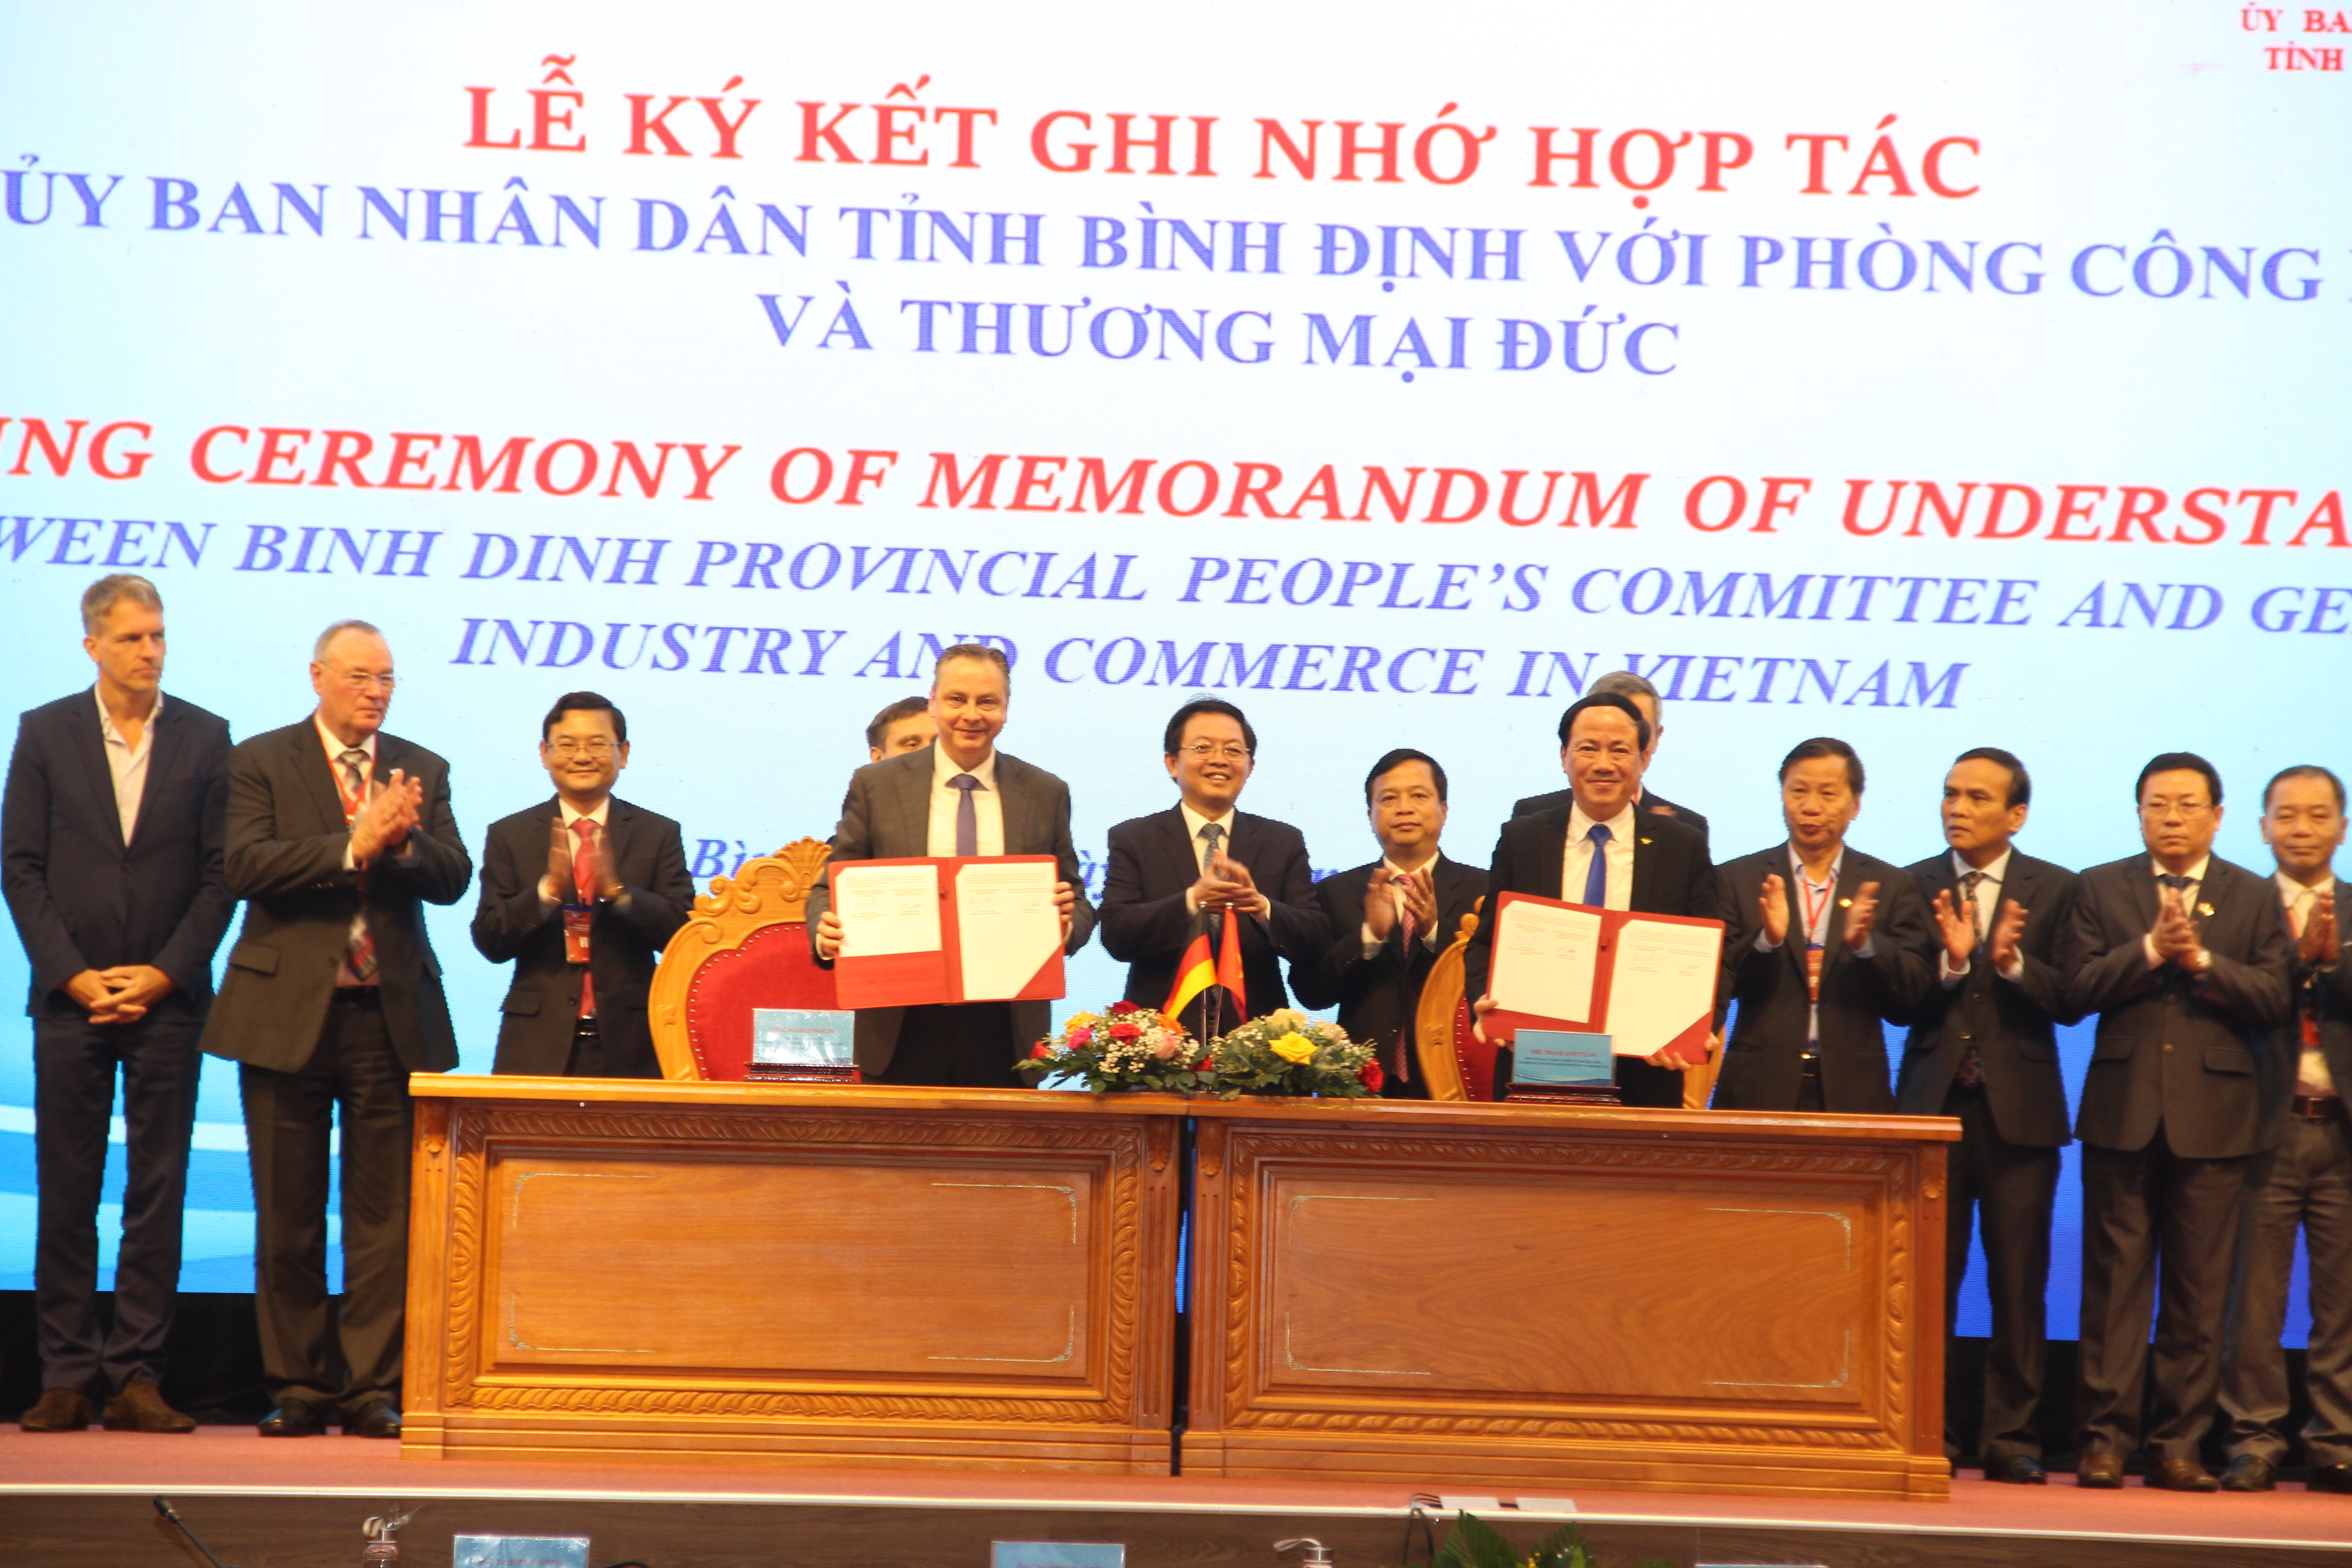 Lãnh đạo tỉnh Bình Định ký kết ghi nhớ hợp tác với Công ty PNE AG về Dự án điện gió ngoài khơi tỉnh này với tổng vốn hơn 4,6 tỷ USD.